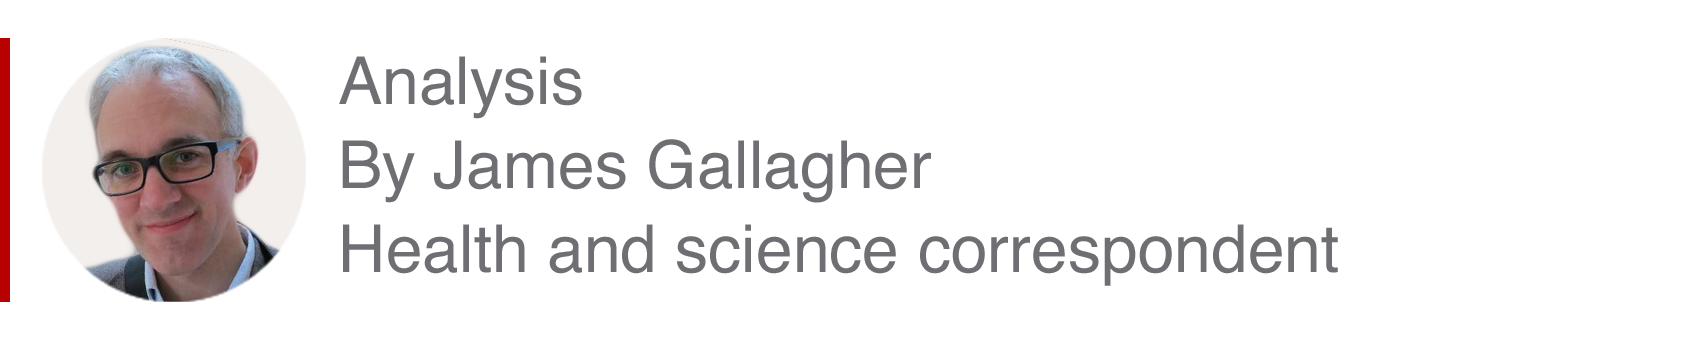 Caja analizadora de James Gallagher, corresponsal de ciencia y salud